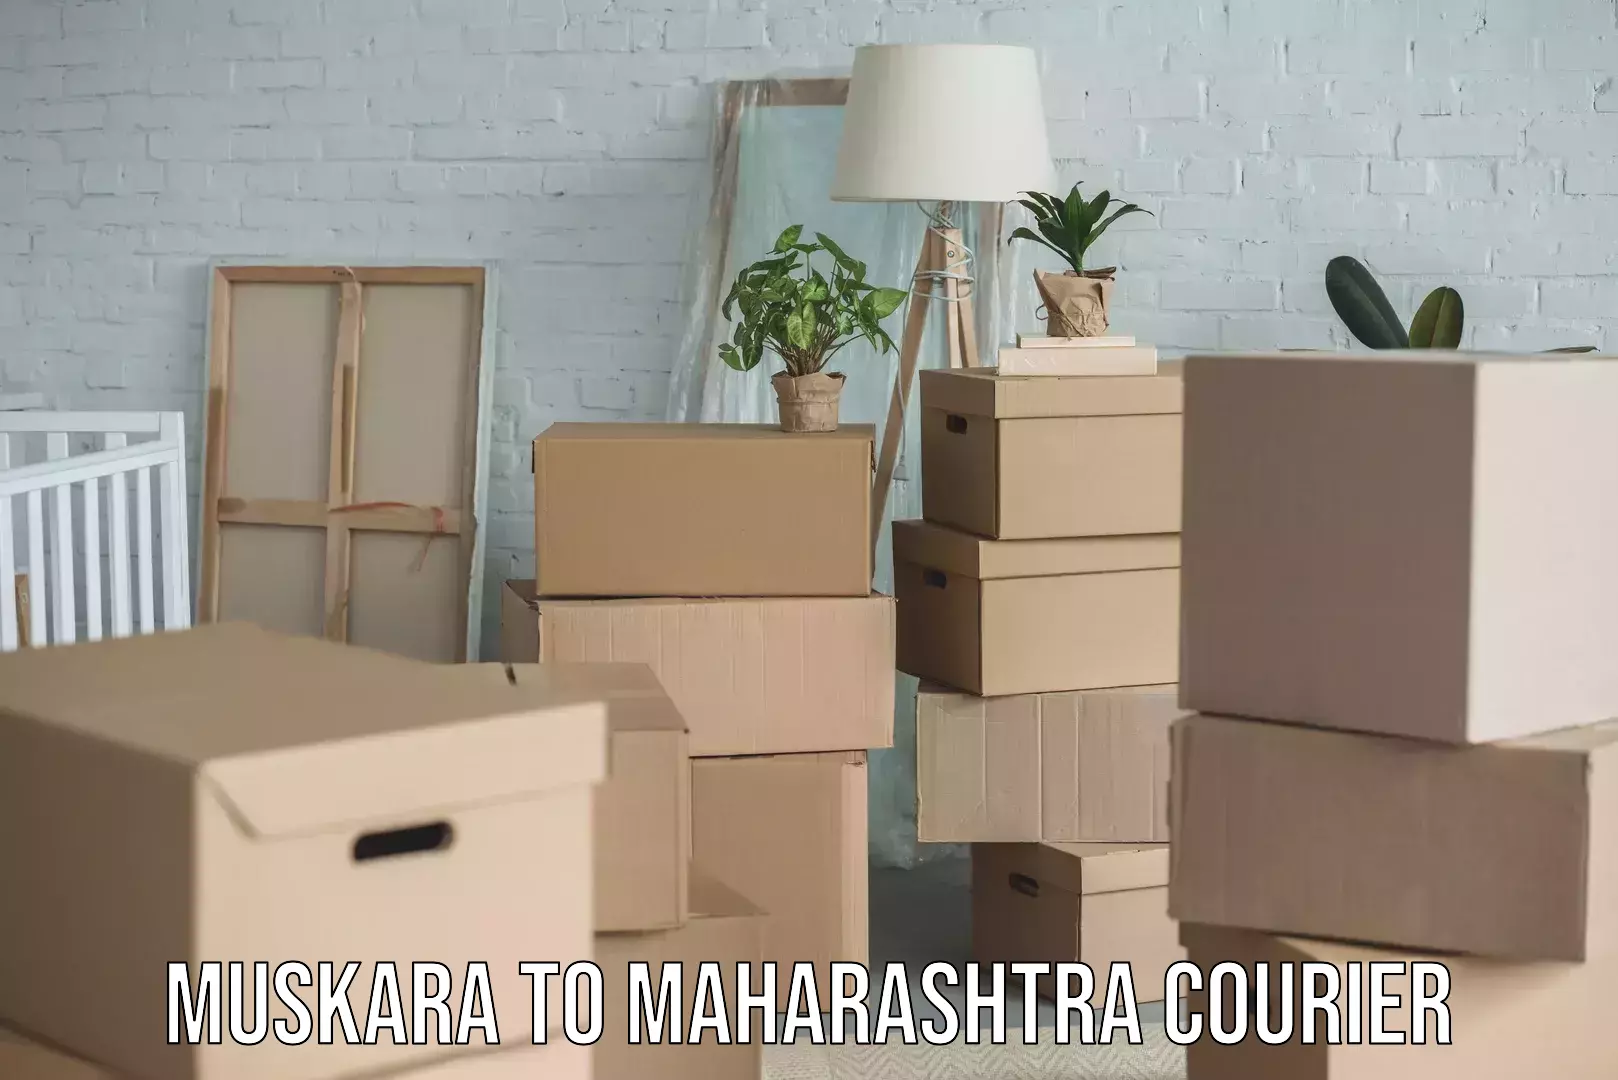 Trusted household movers Muskara to Maharashtra